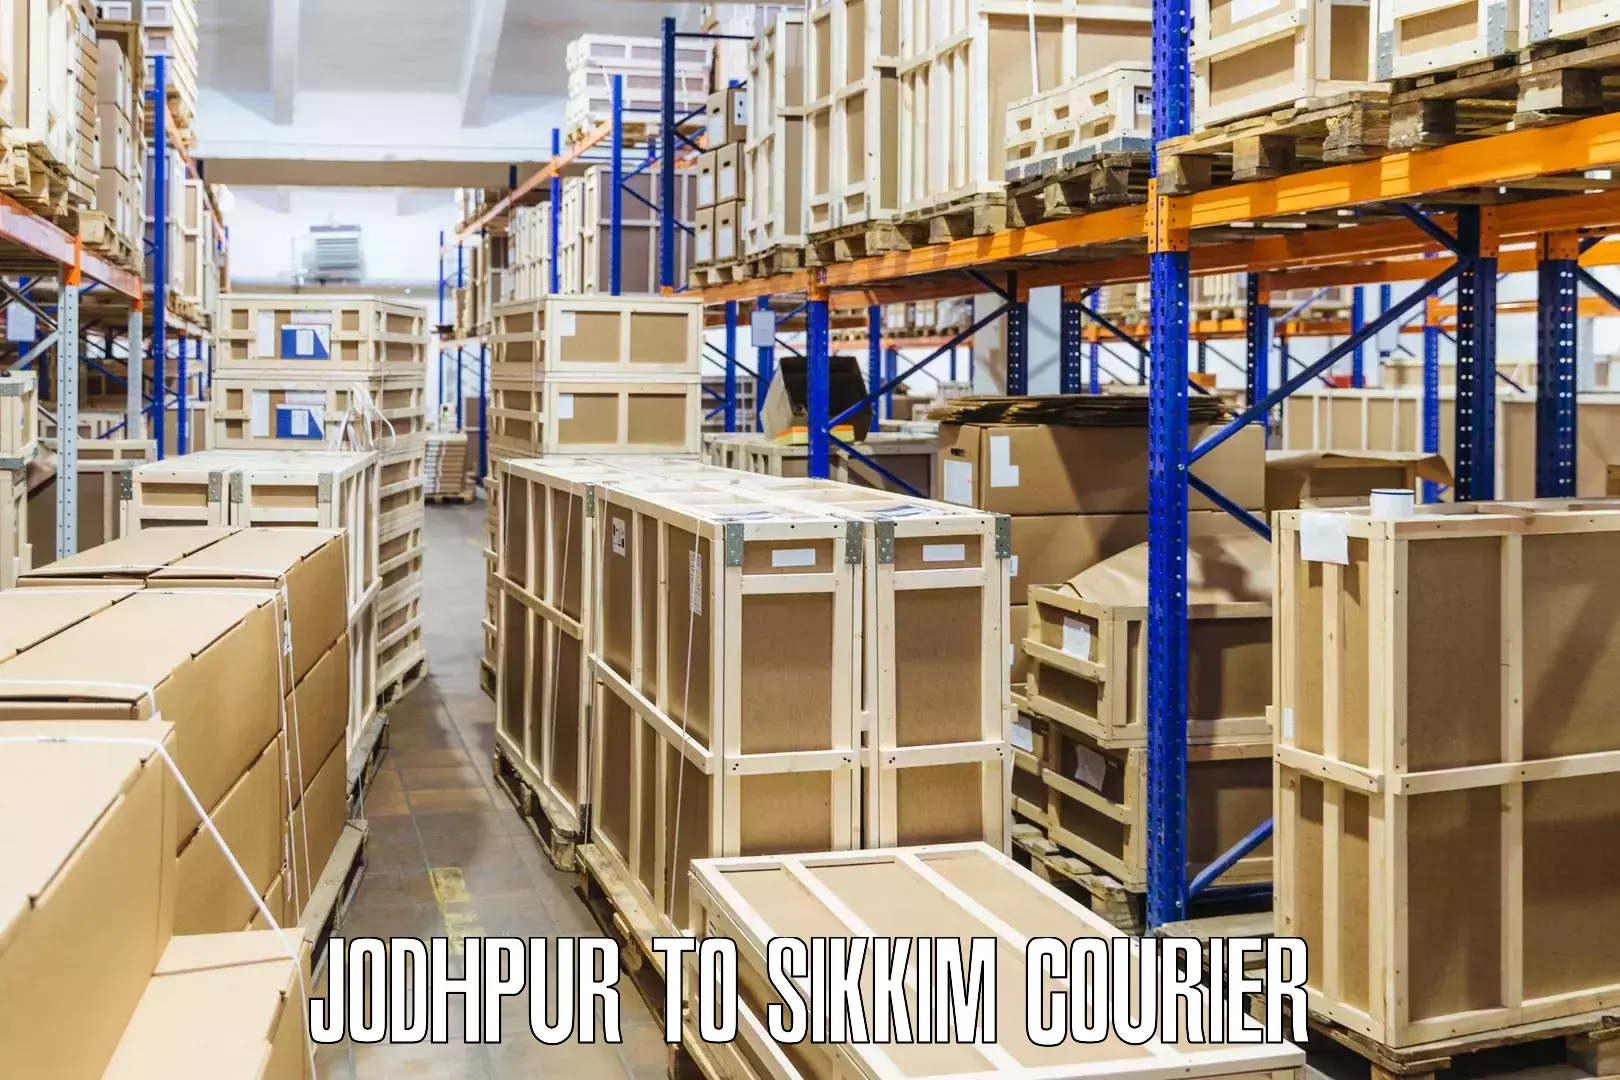 Flexible parcel services Jodhpur to NIT Sikkim